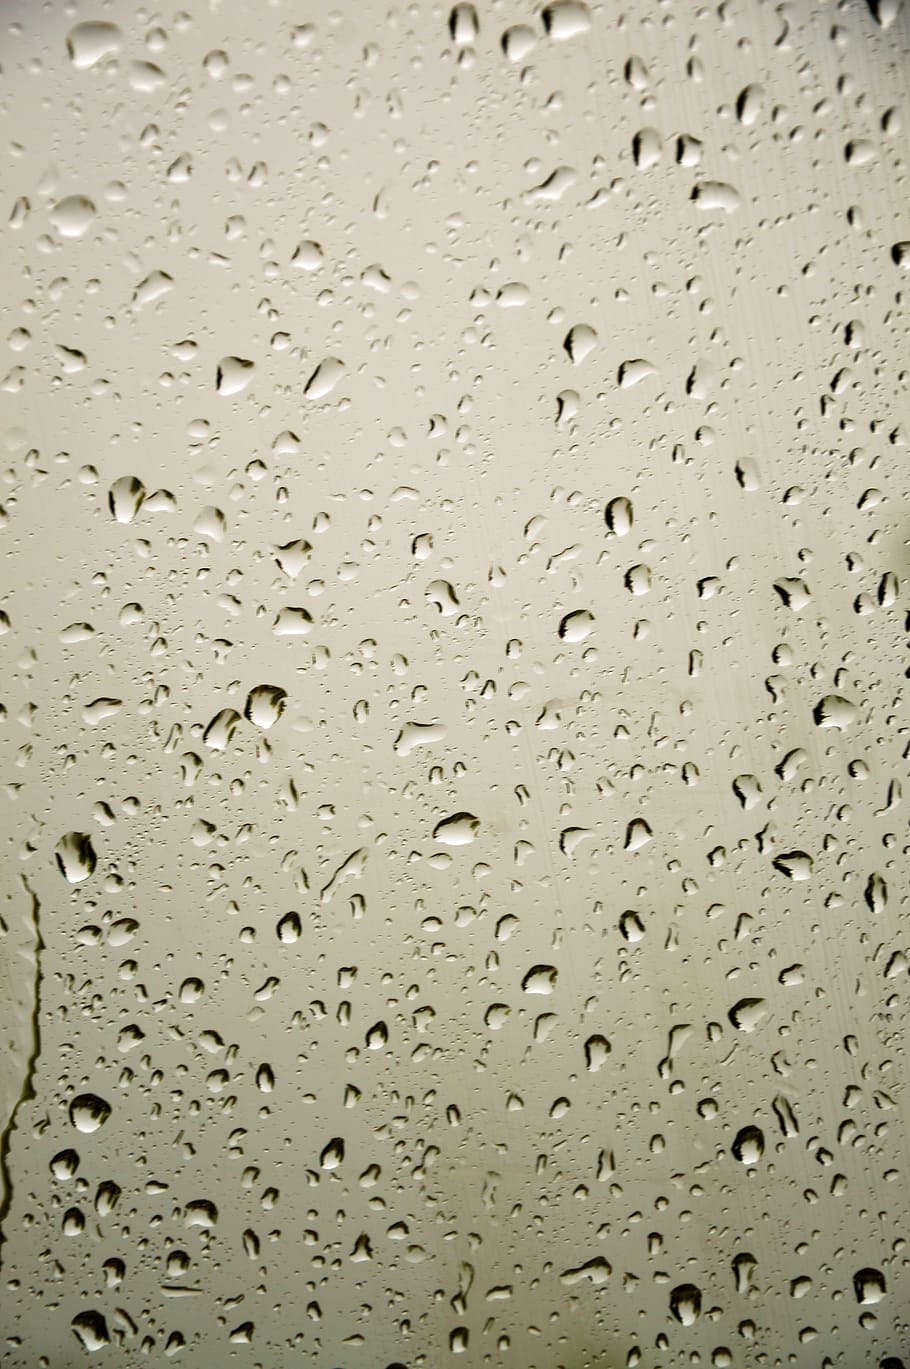 Window, Drops, Glass, Wet, Water, Rain, Rain Drops, - Tetesan Air Hujan Di Kaca - HD Wallpaper 